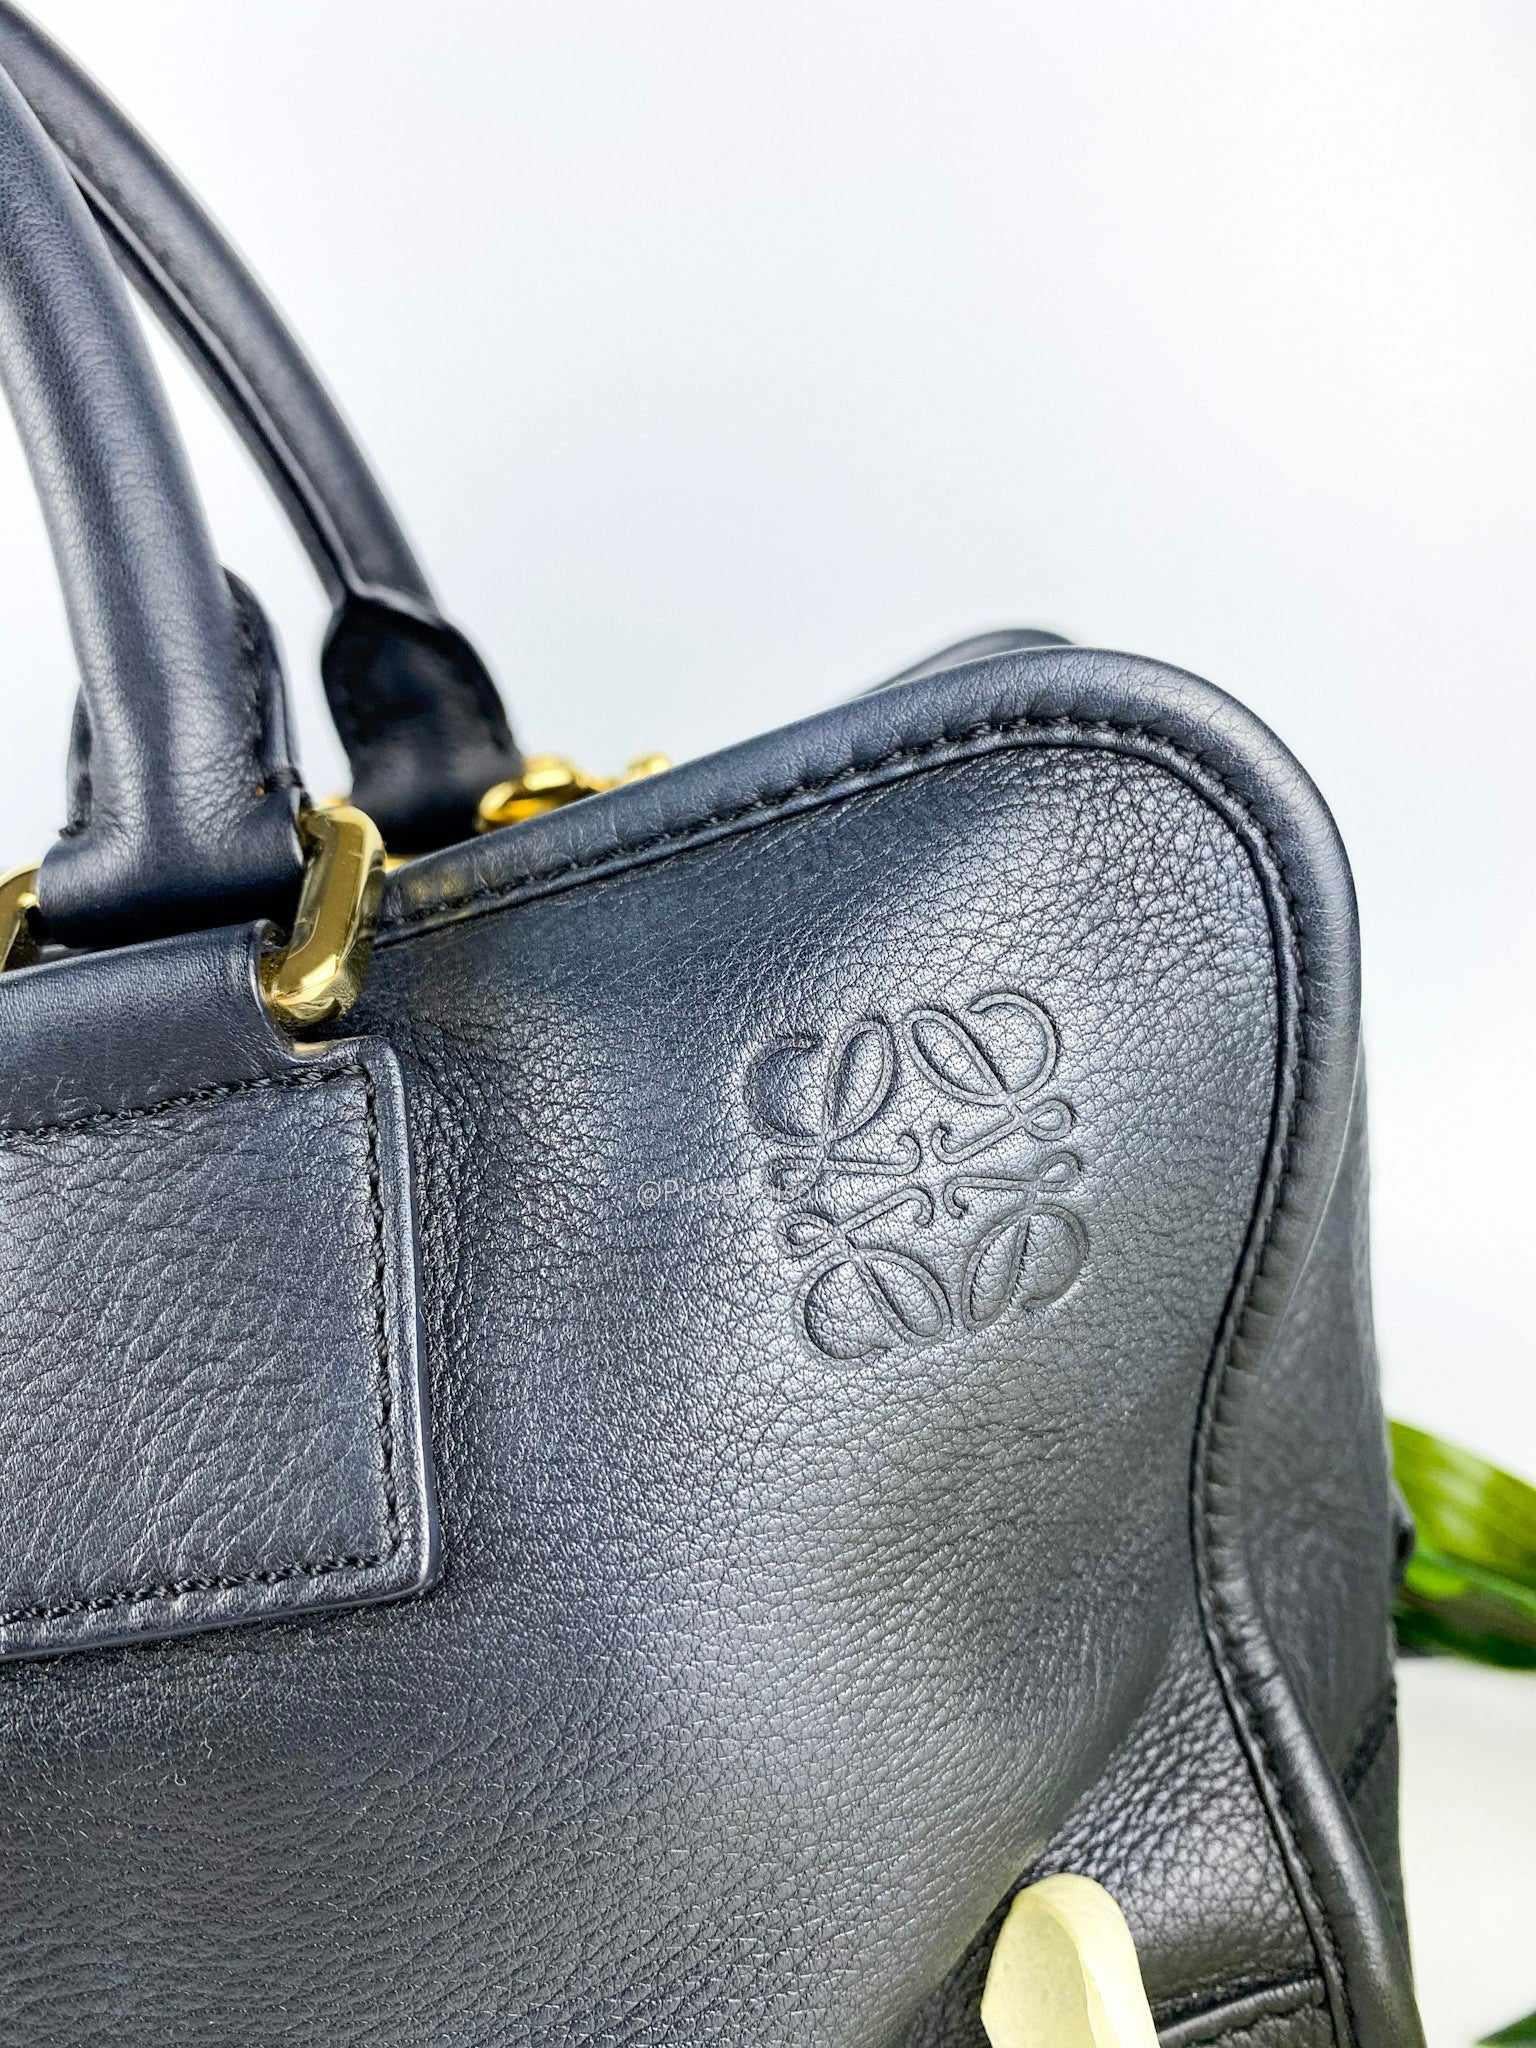 Loewe Amazona Calfskin Two Way Shoulder Bag